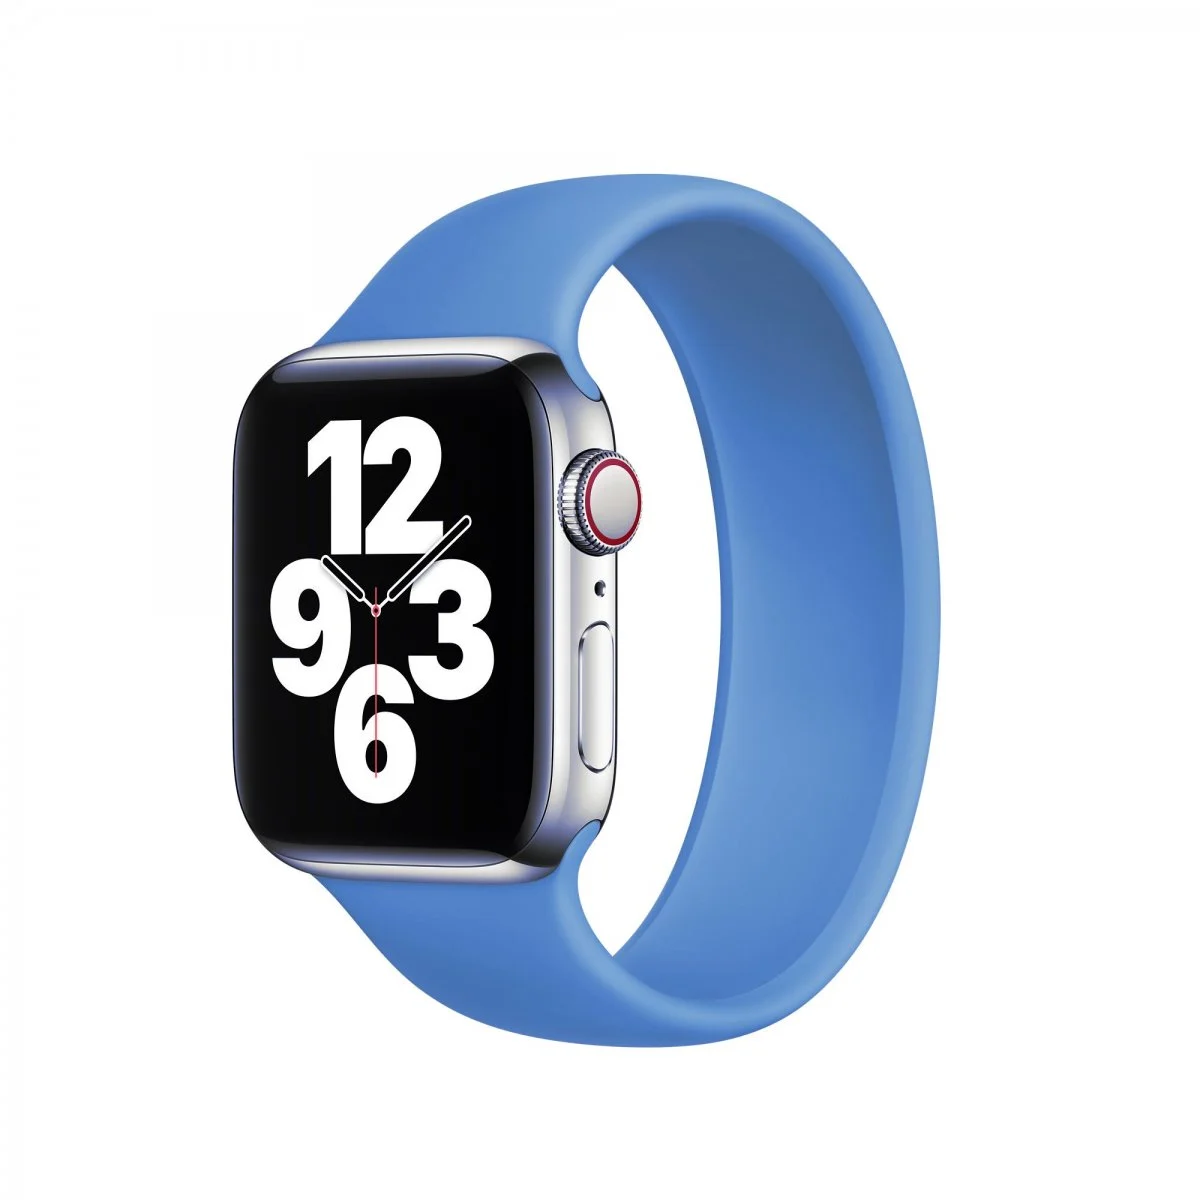 Řemínek iMore Solo Loop Apple Watch Series 1/2/3 42mm - Modrá (L)